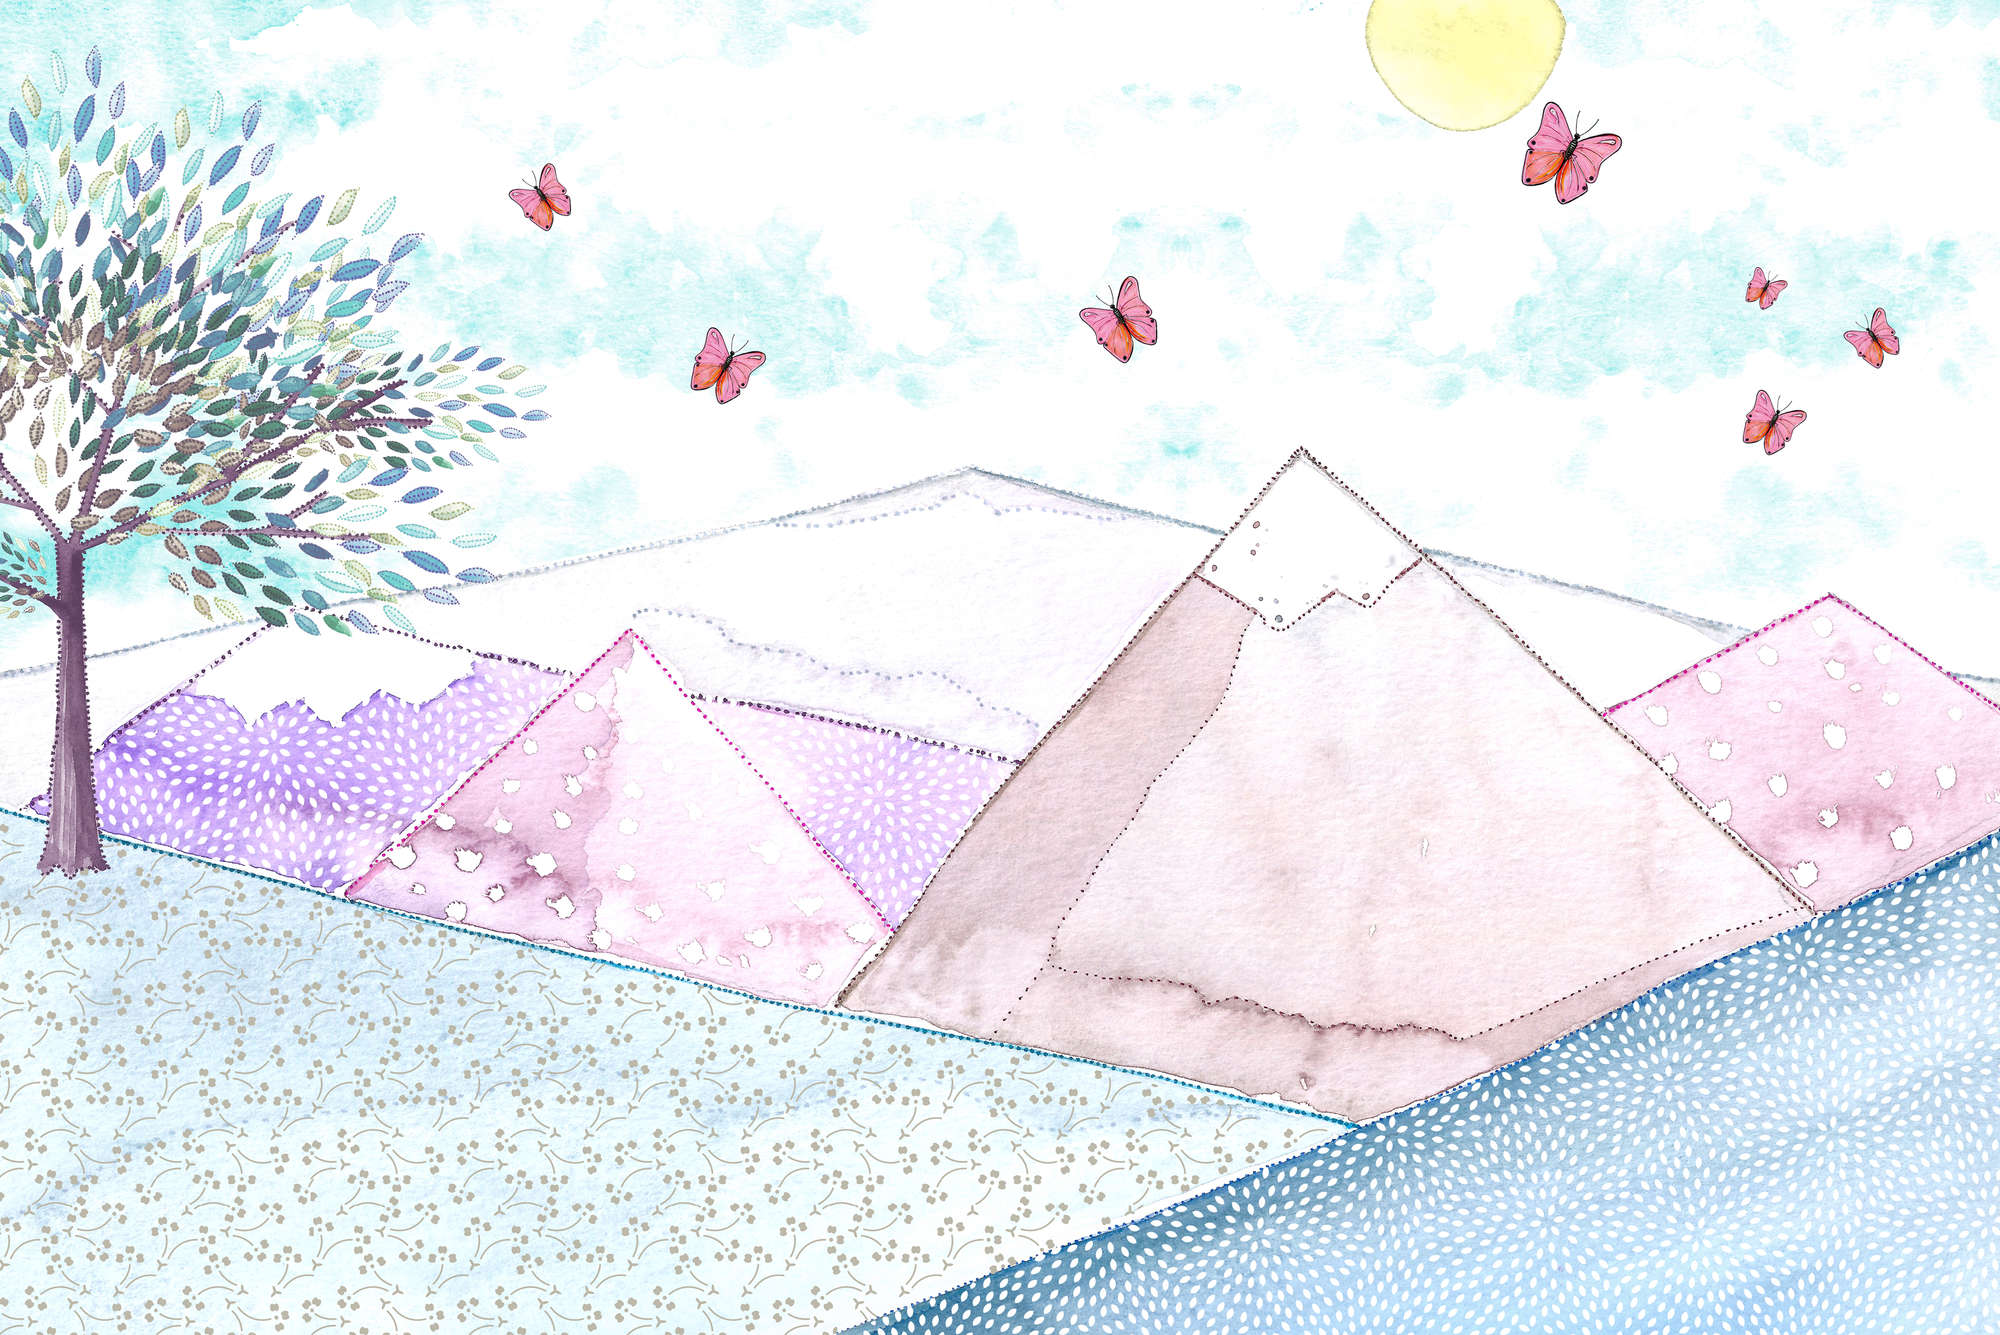             Kinderbehang berglandschap tekening op parelmoer gladde vlieseline
        